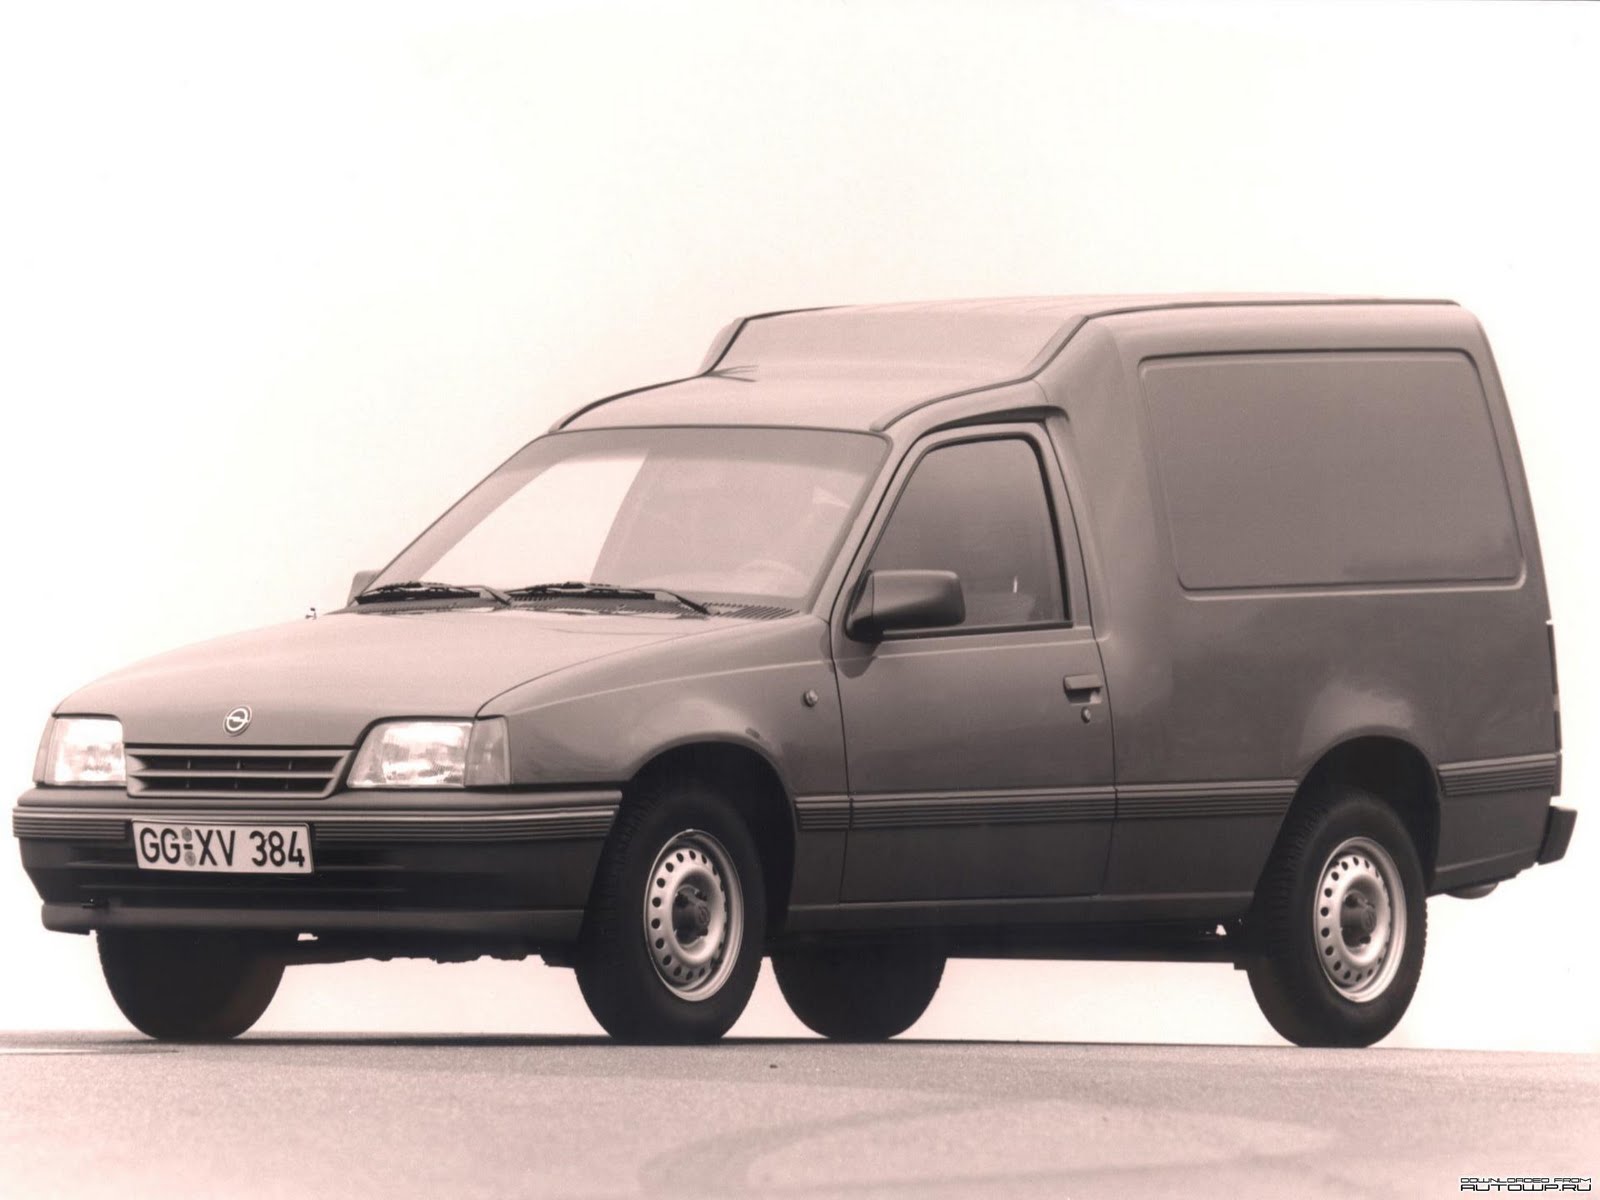 El Opel Kadett Combo, fue convertido a un Opel Kadett Combo GSI con llantas